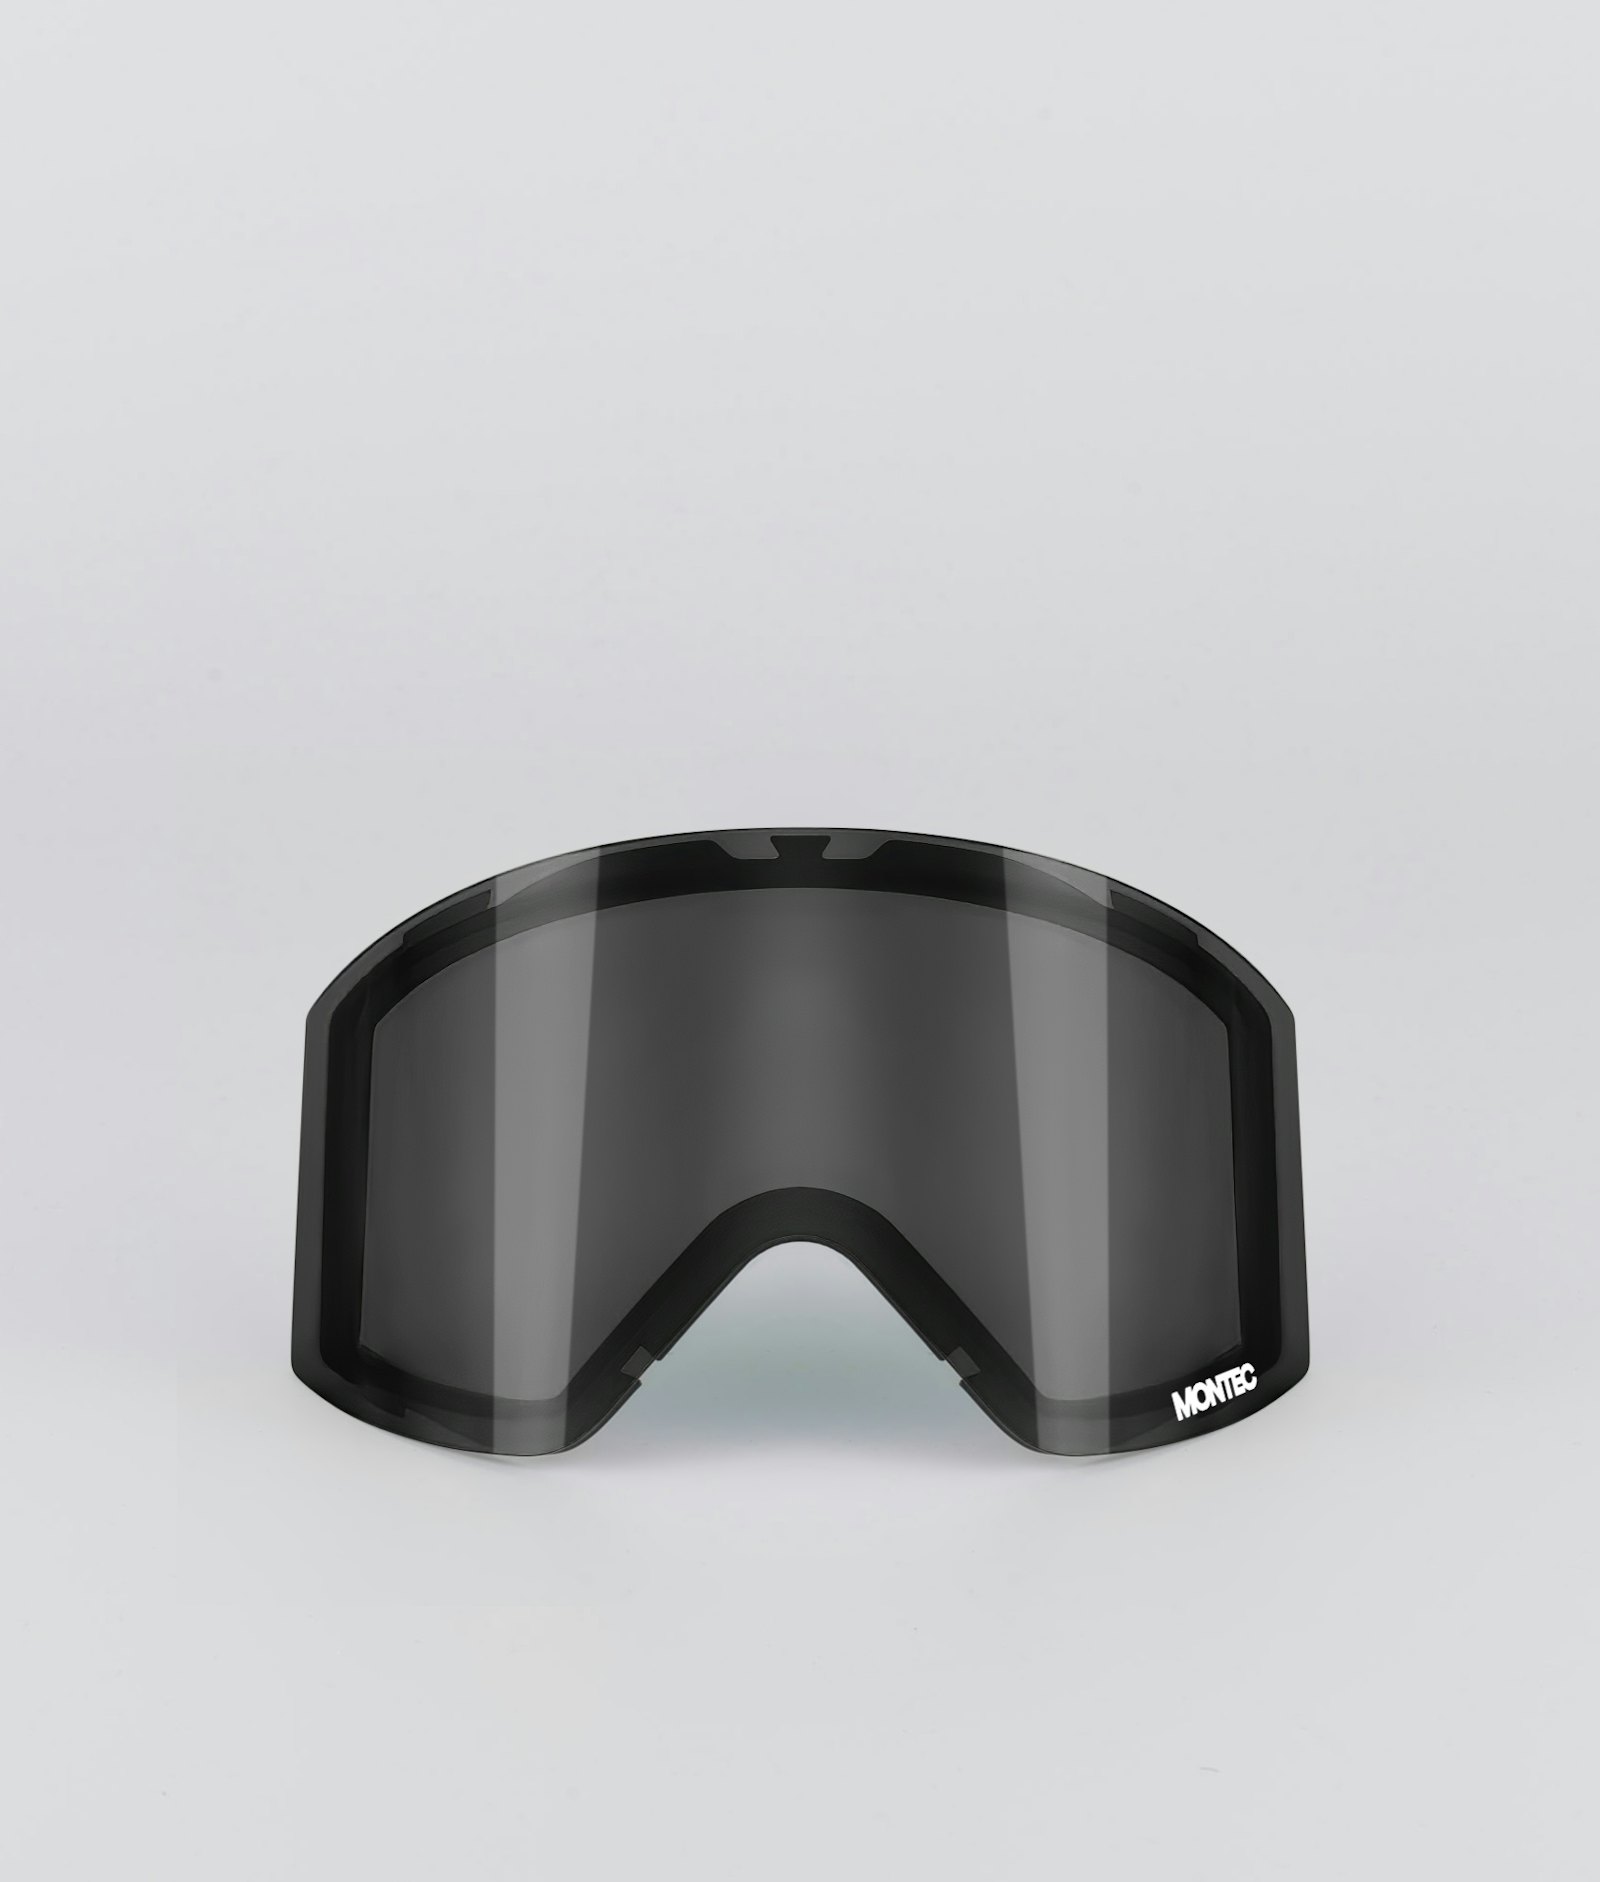 Montec Scope 2020 Goggle Lens Medium Lente de Repuesto Snow Black